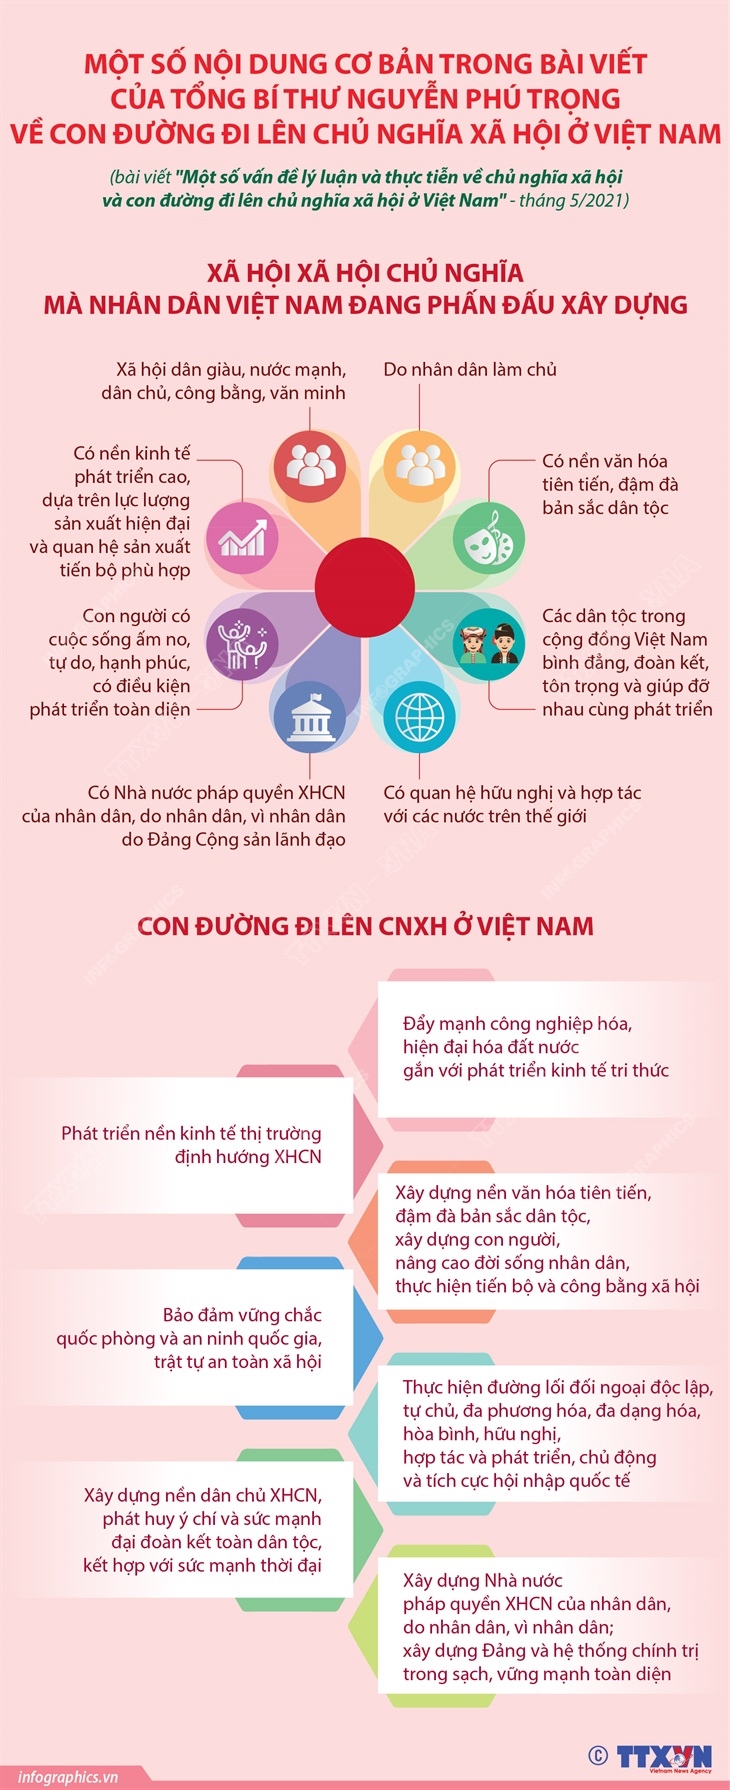 Một số nội dung cơ bản trong bài viết của Tổng Bí thư Nguyễn Phú Trọng về con đường đi lên chủ nghĩa xã hội ở Việt Nam